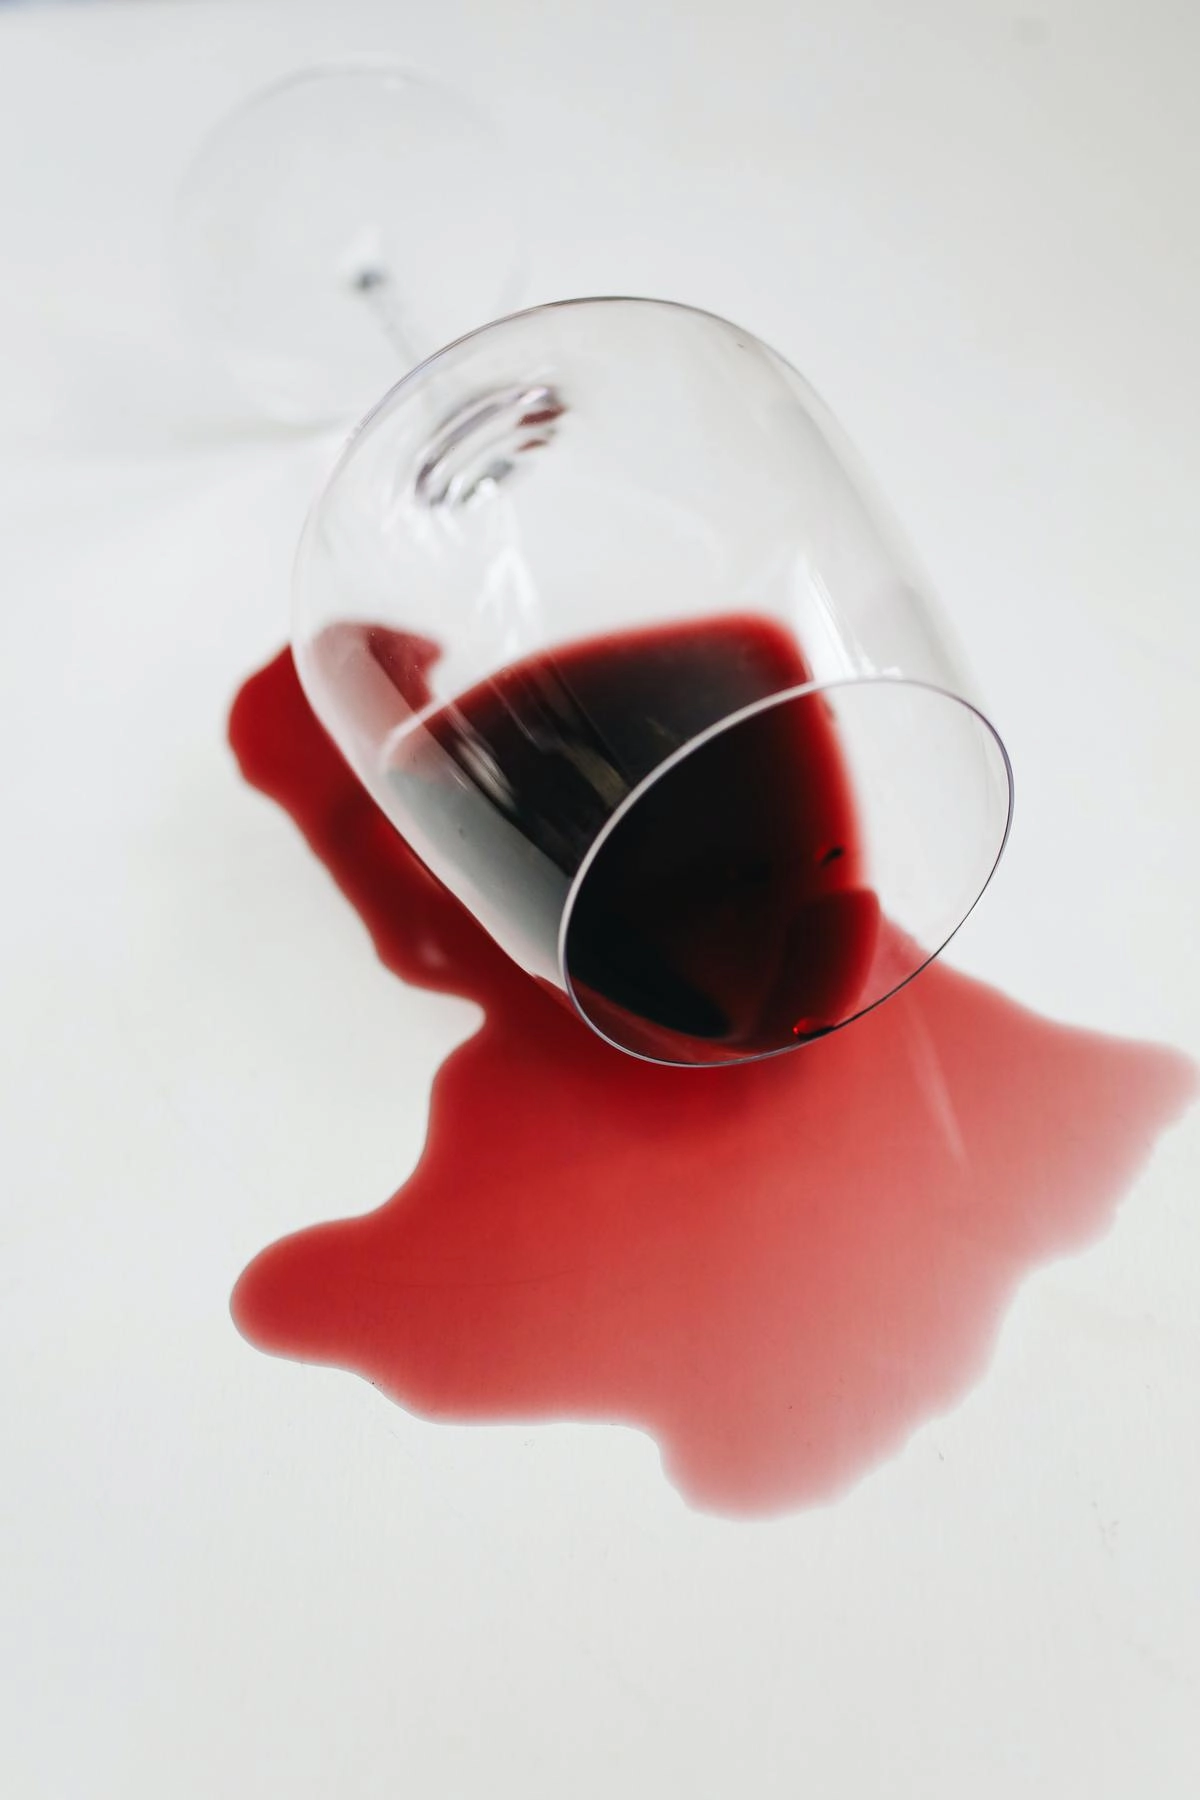 Соль может справиться со свежими пятнами от красного вина